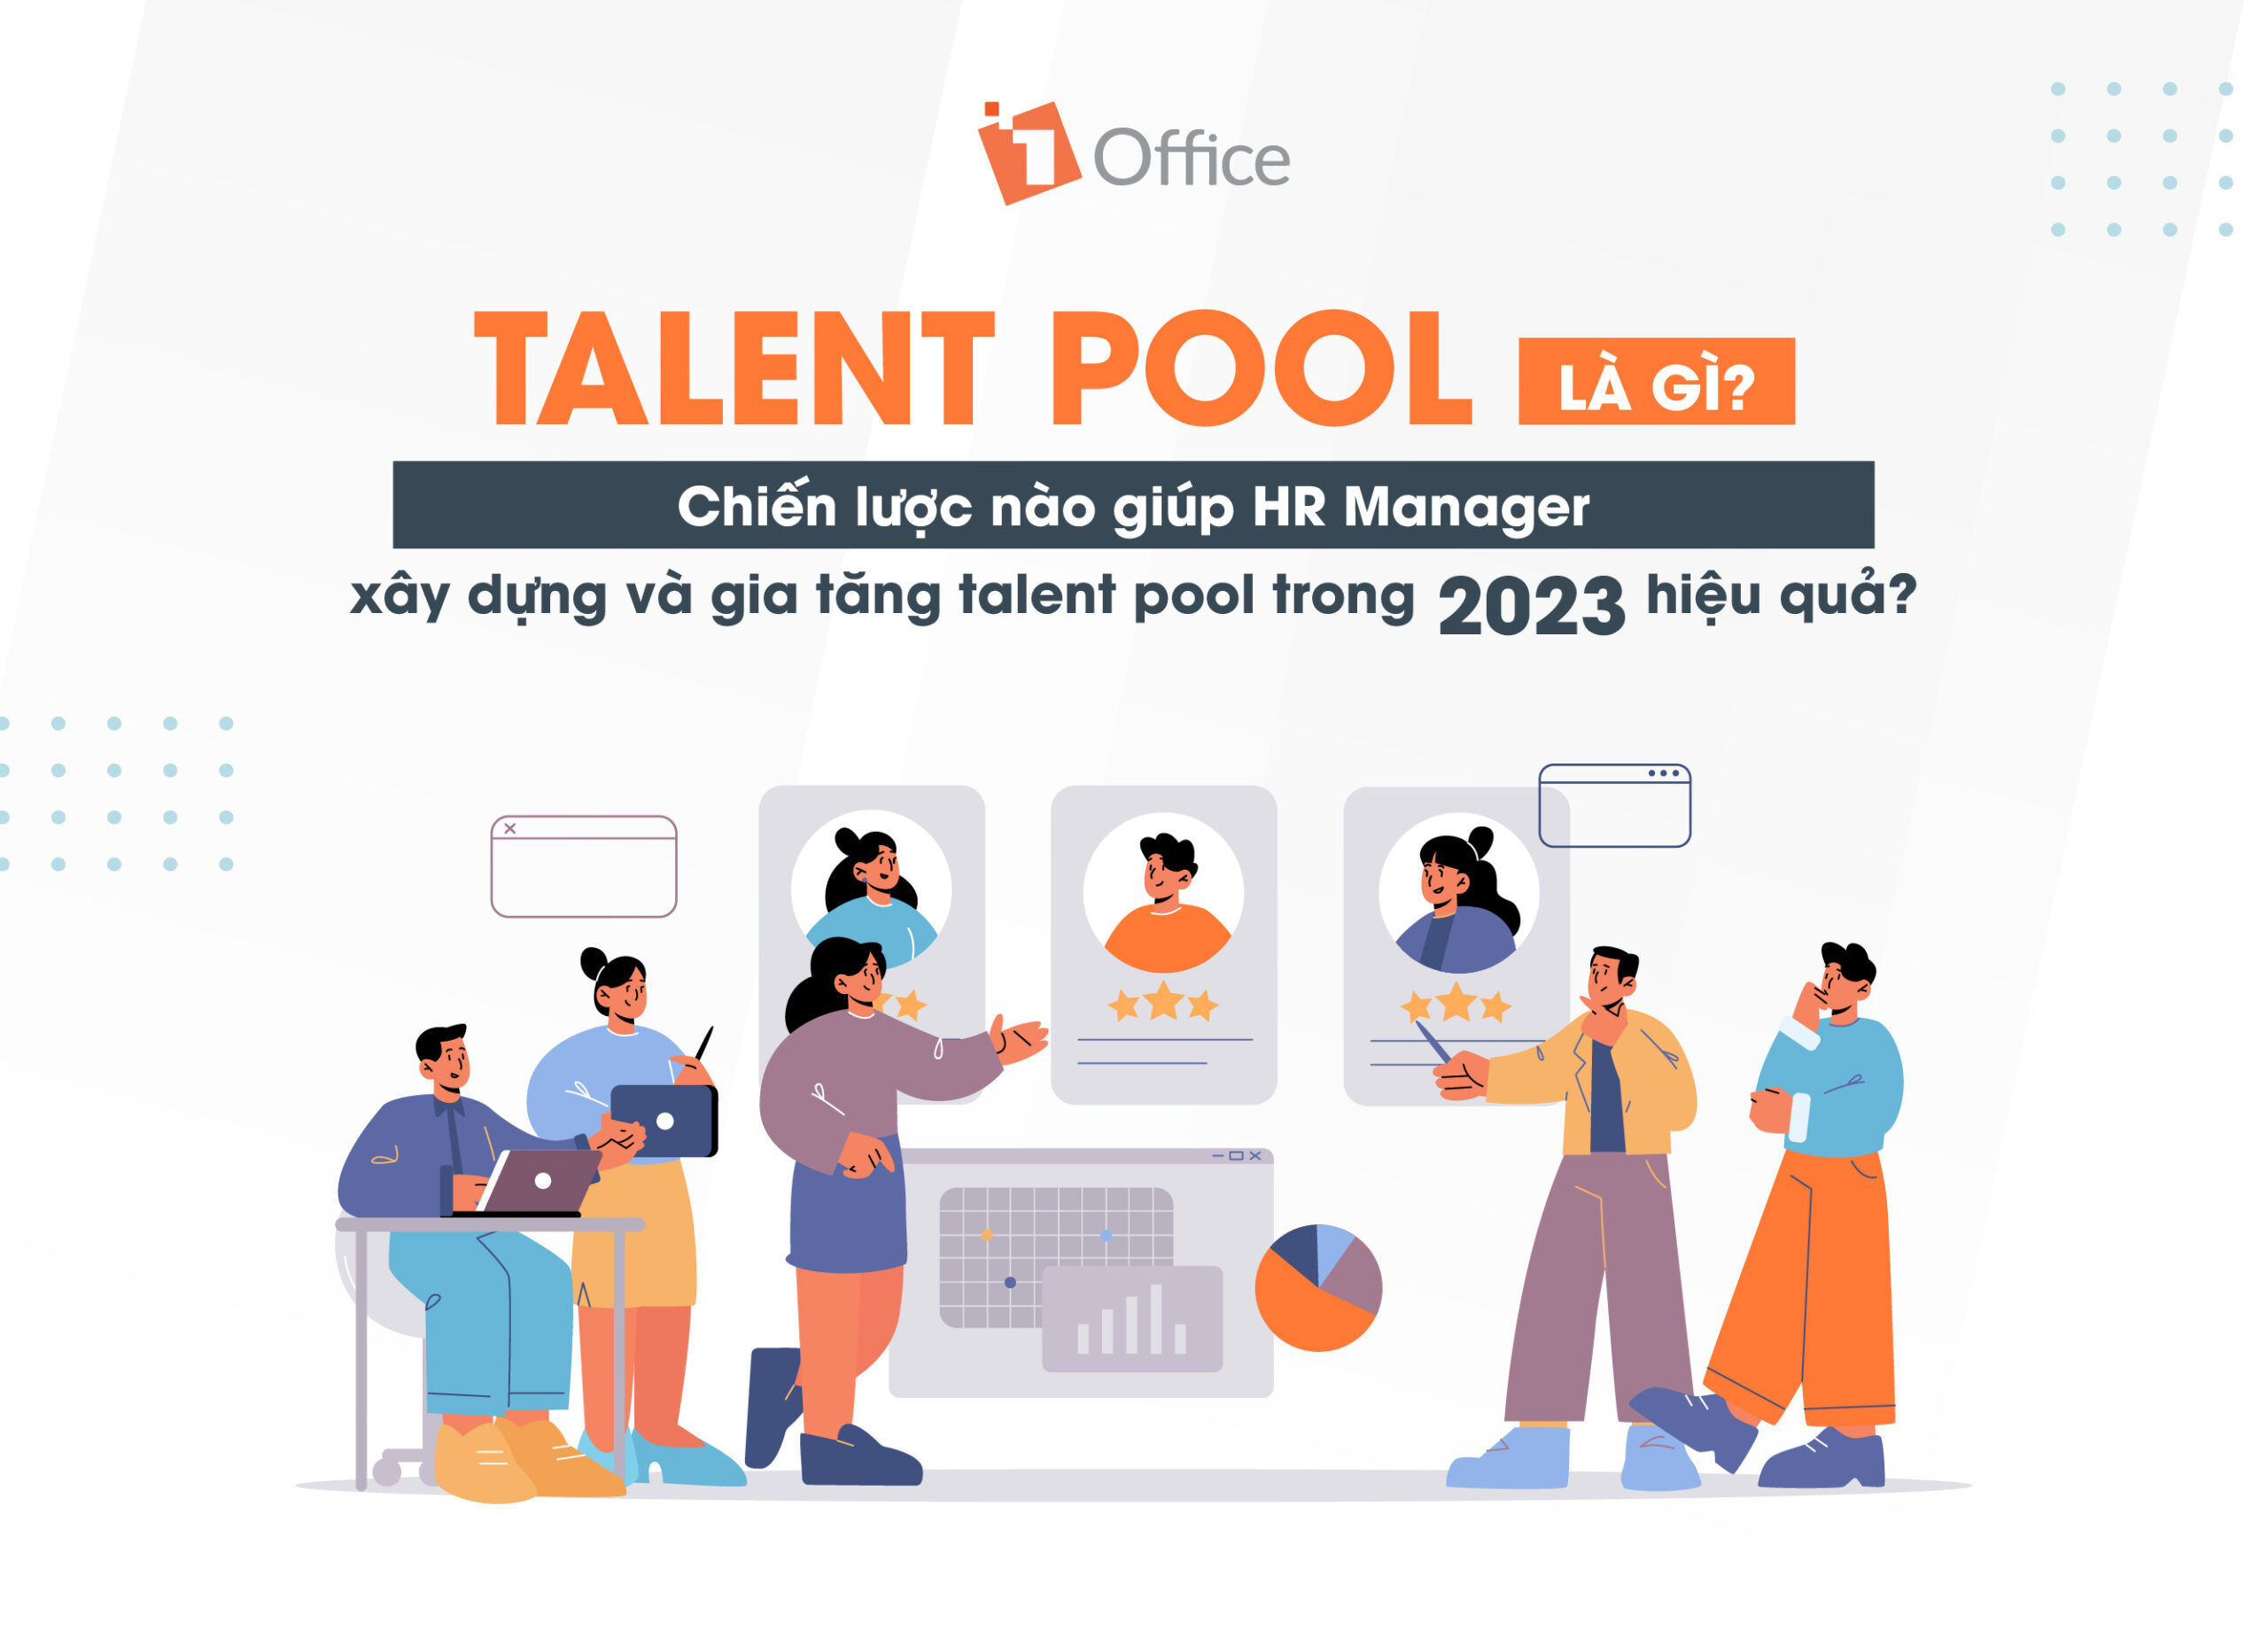 Talent pool là gì? Chiến lược giúp HR Manager xây dựng và quản lý talent pool hiệu quả trong 2023?